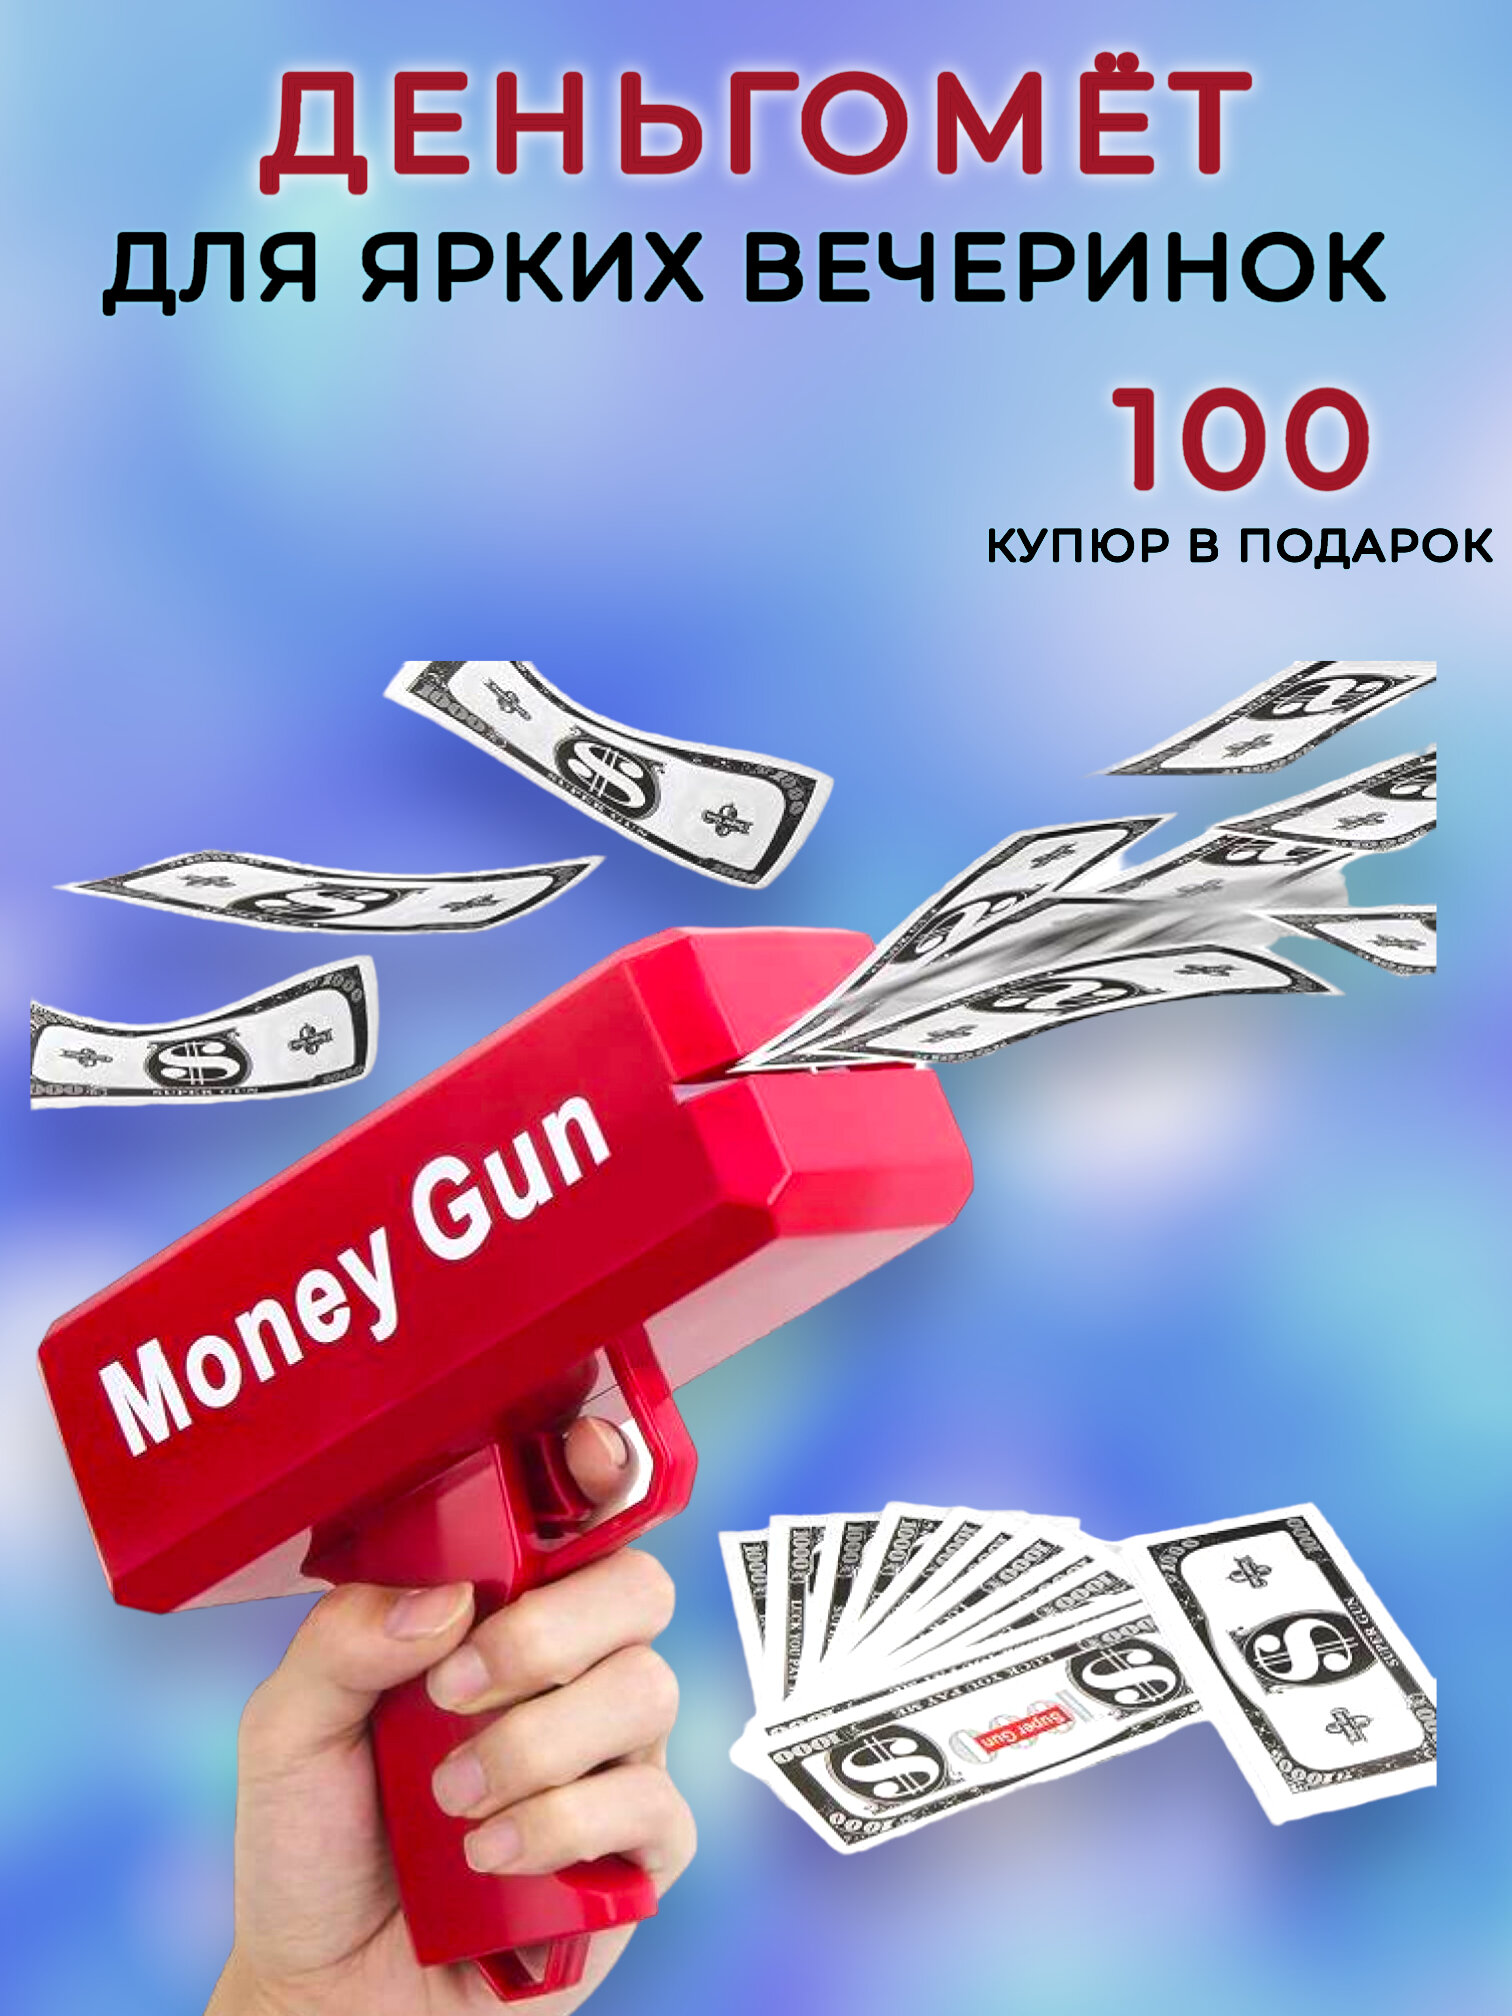 Деньгомет, бабломет, денежный пистолет для разбрасывания денег